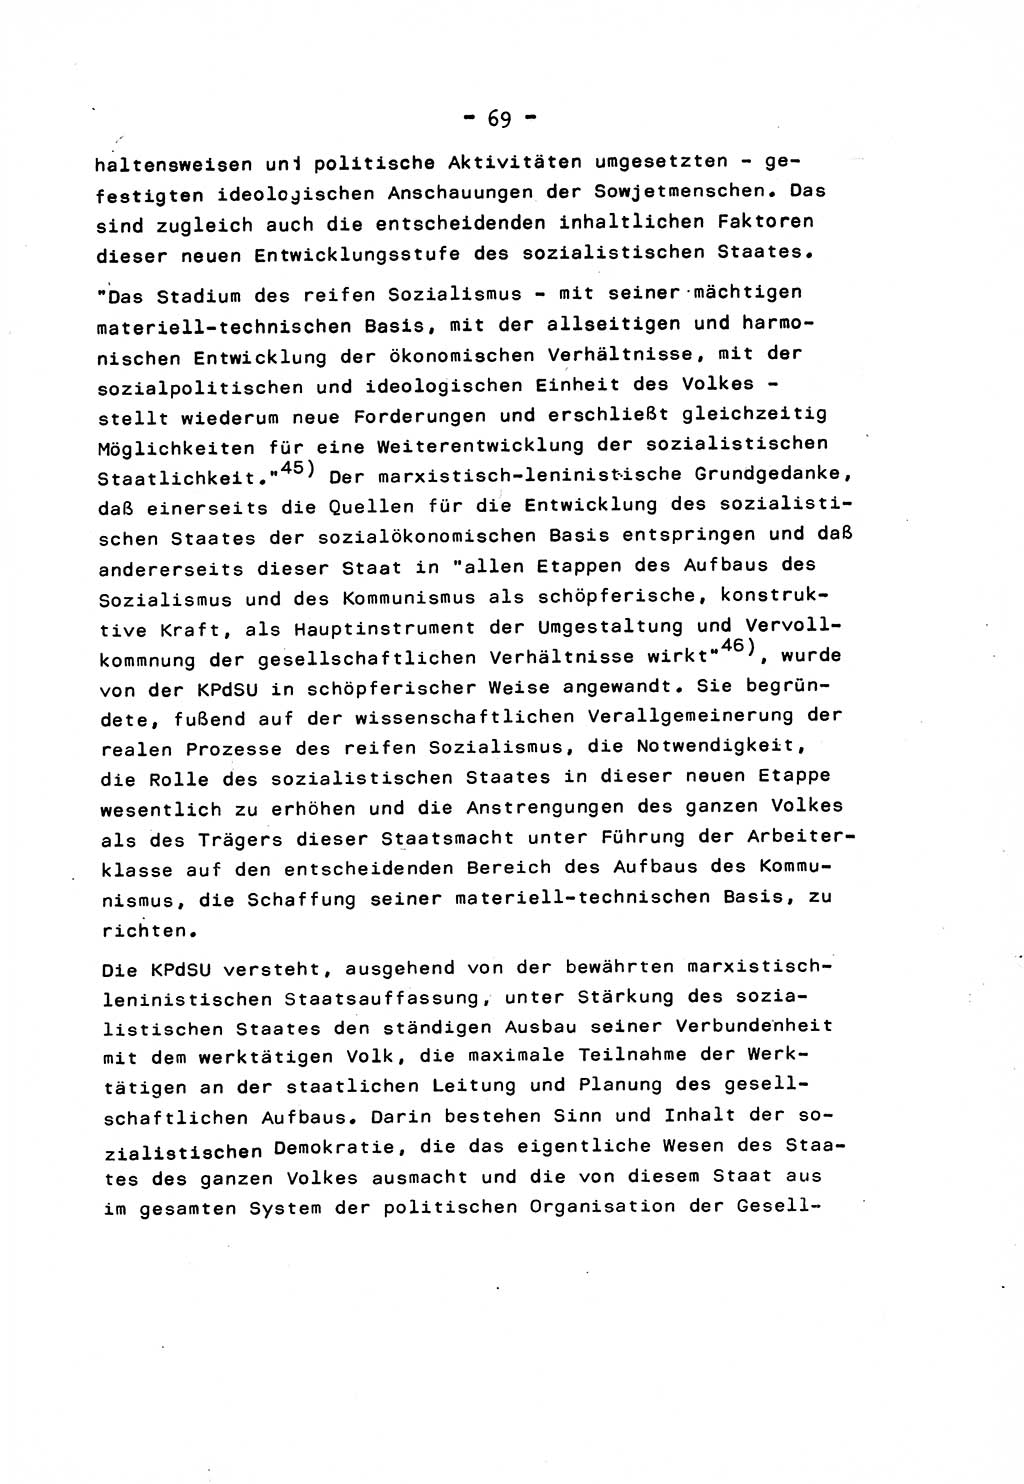 Marxistisch-leninistische Staats- und Rechtstheorie [Deutsche Demokratische Republik (DDR)] 1975, Seite 69 (ML St.-R.-Th. DDR 1975, S. 69)